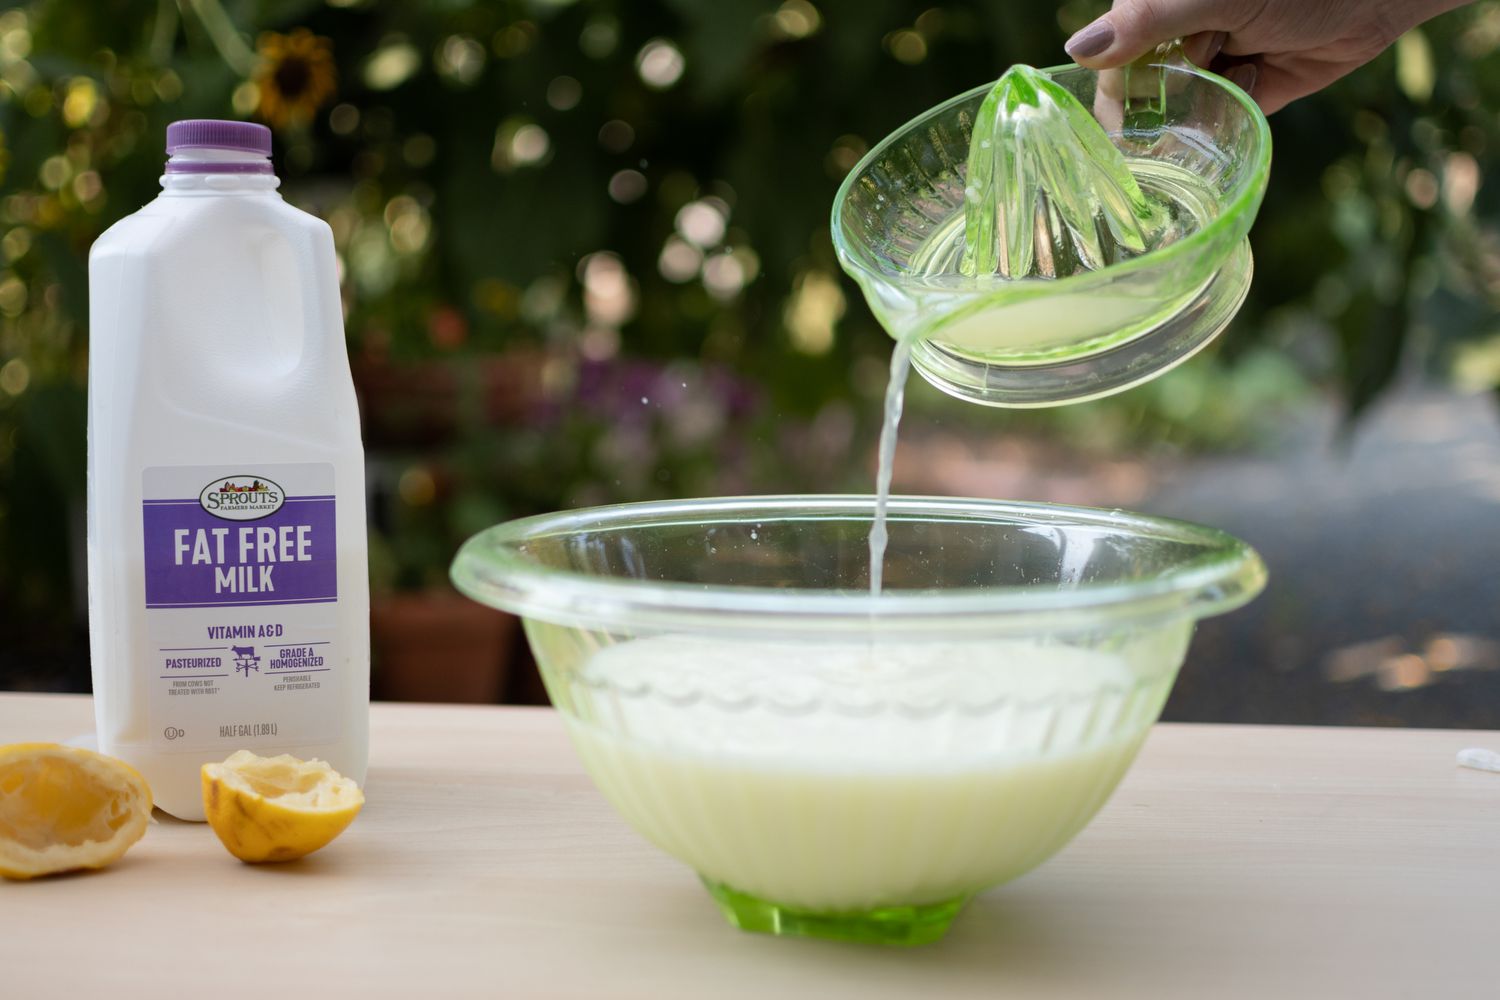 Ausgepresster Zitronensaft in eine Glasschüssel mit Milch neben einem Milchkarton und Zitronenschalen gegossen